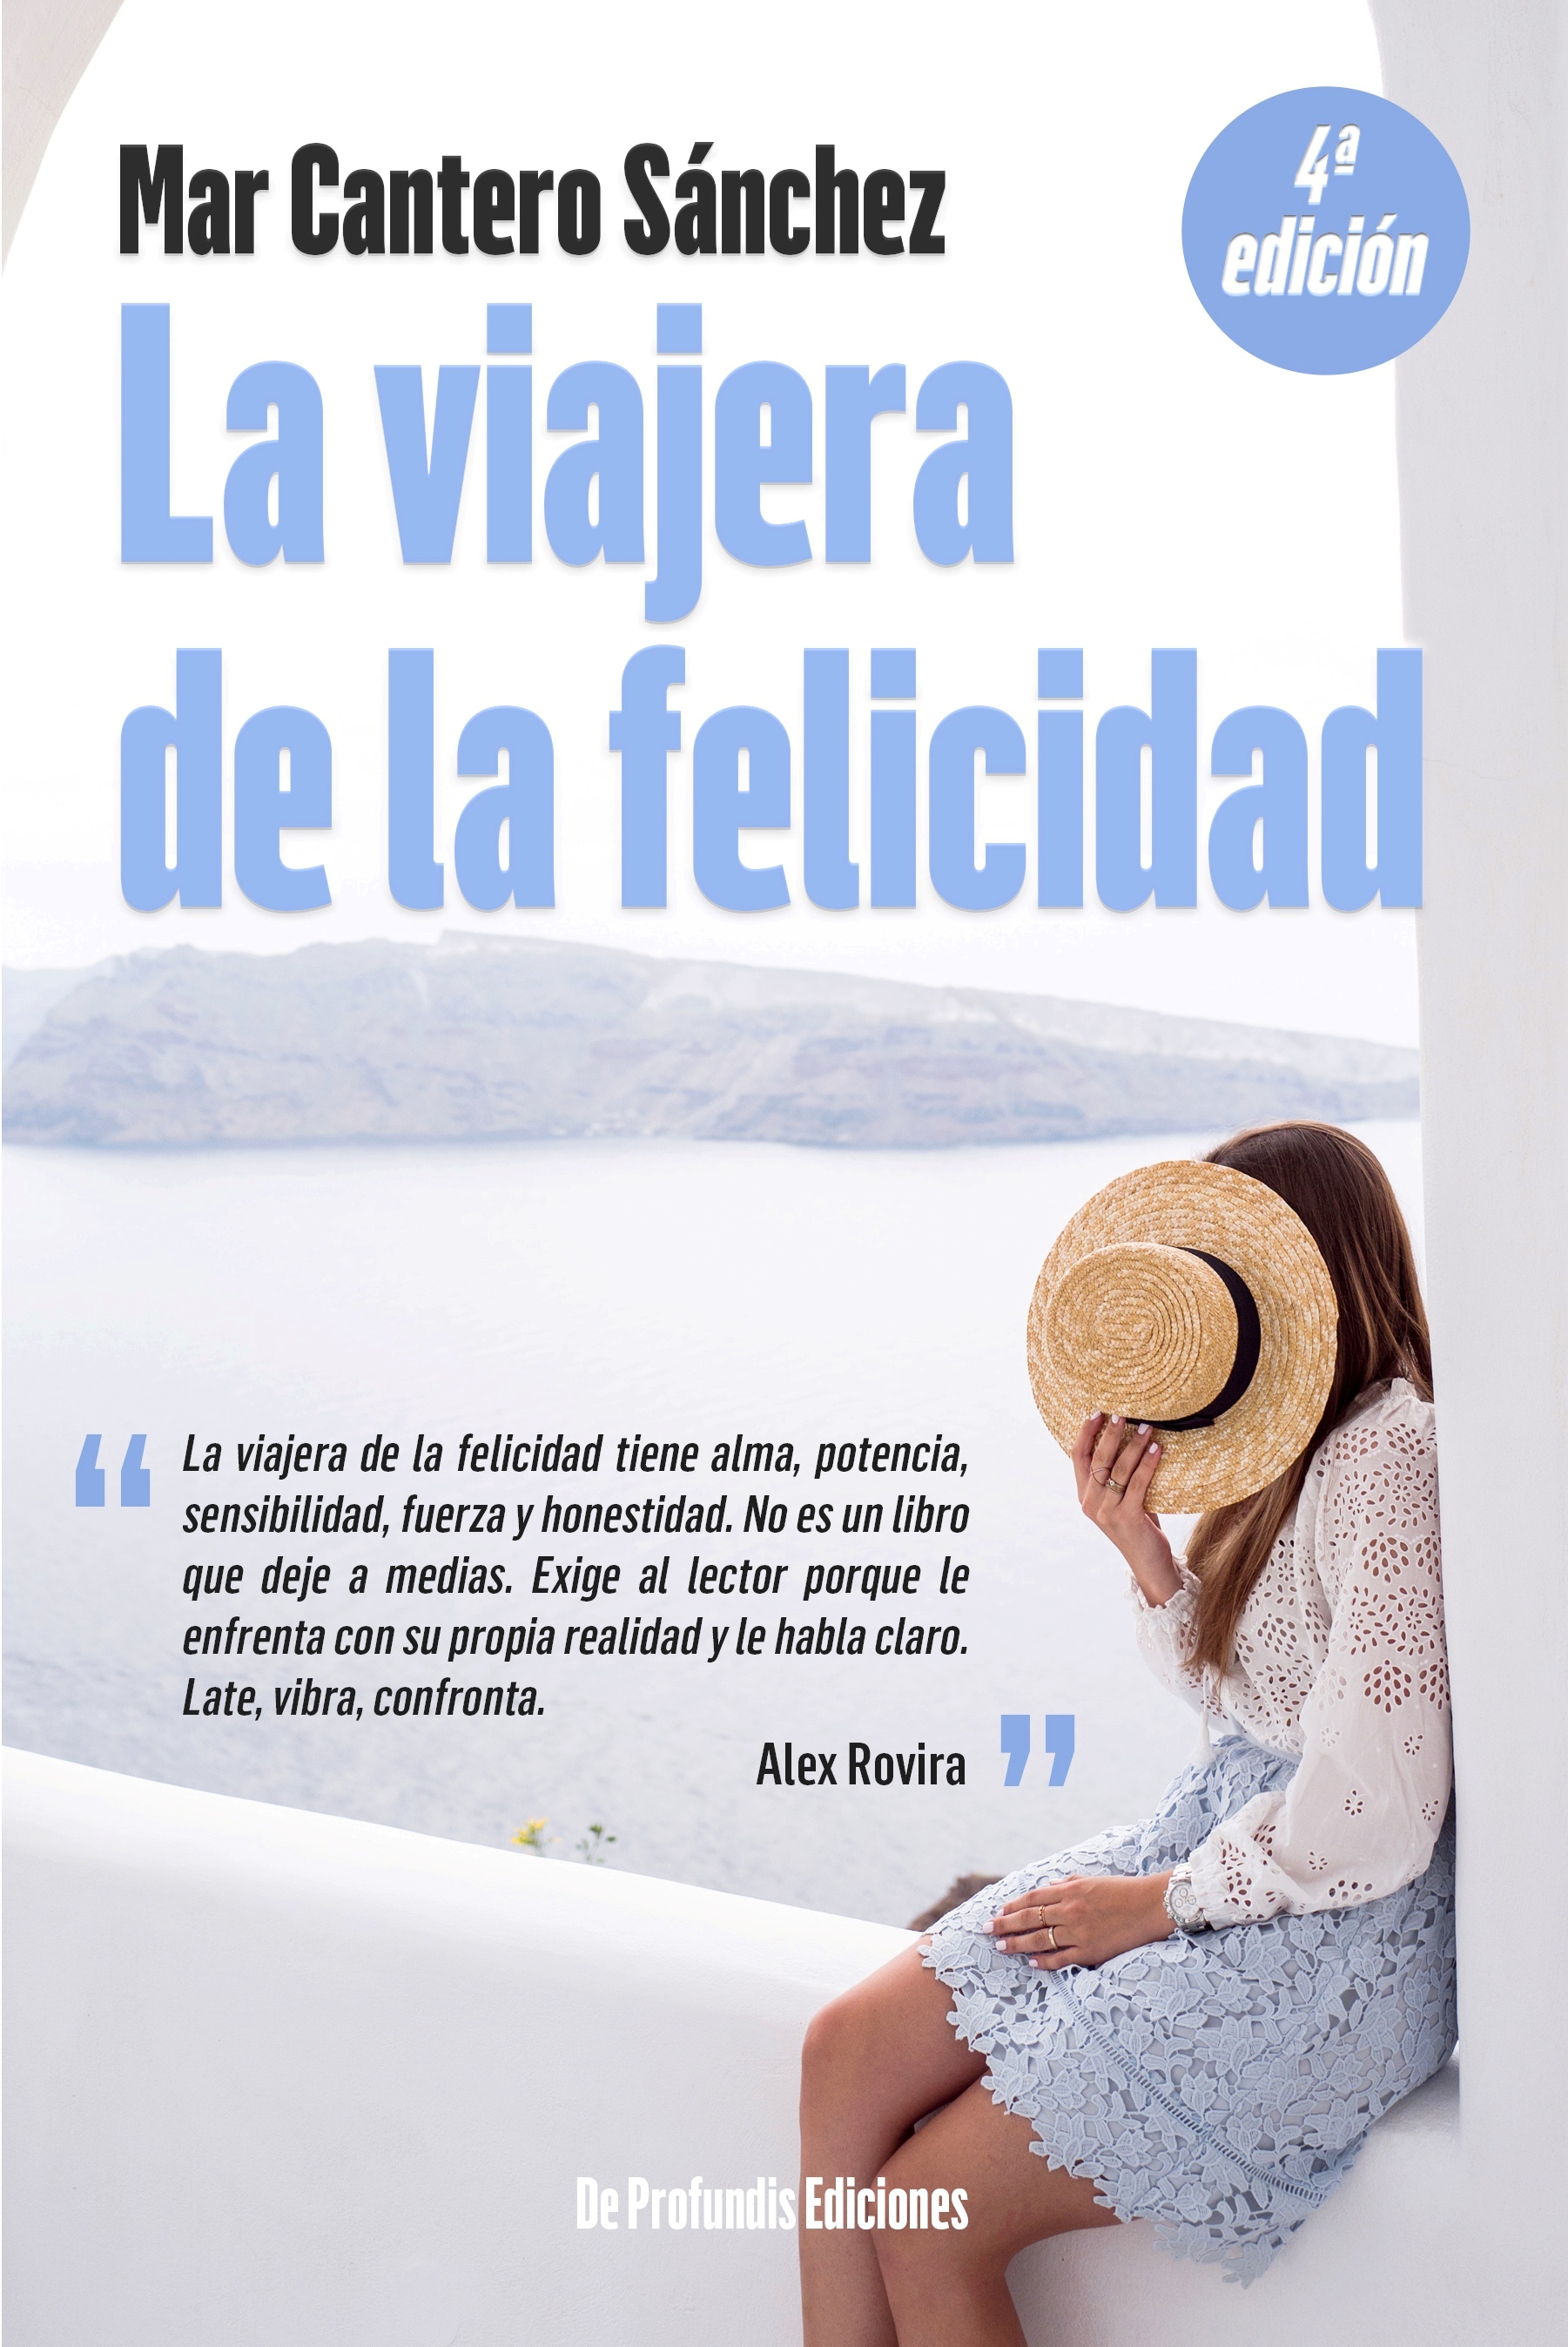 La viajera de la felicidad portada TDK, 4ª edición, Mar Cantero Sánchez, www.marcanterosanchez.com